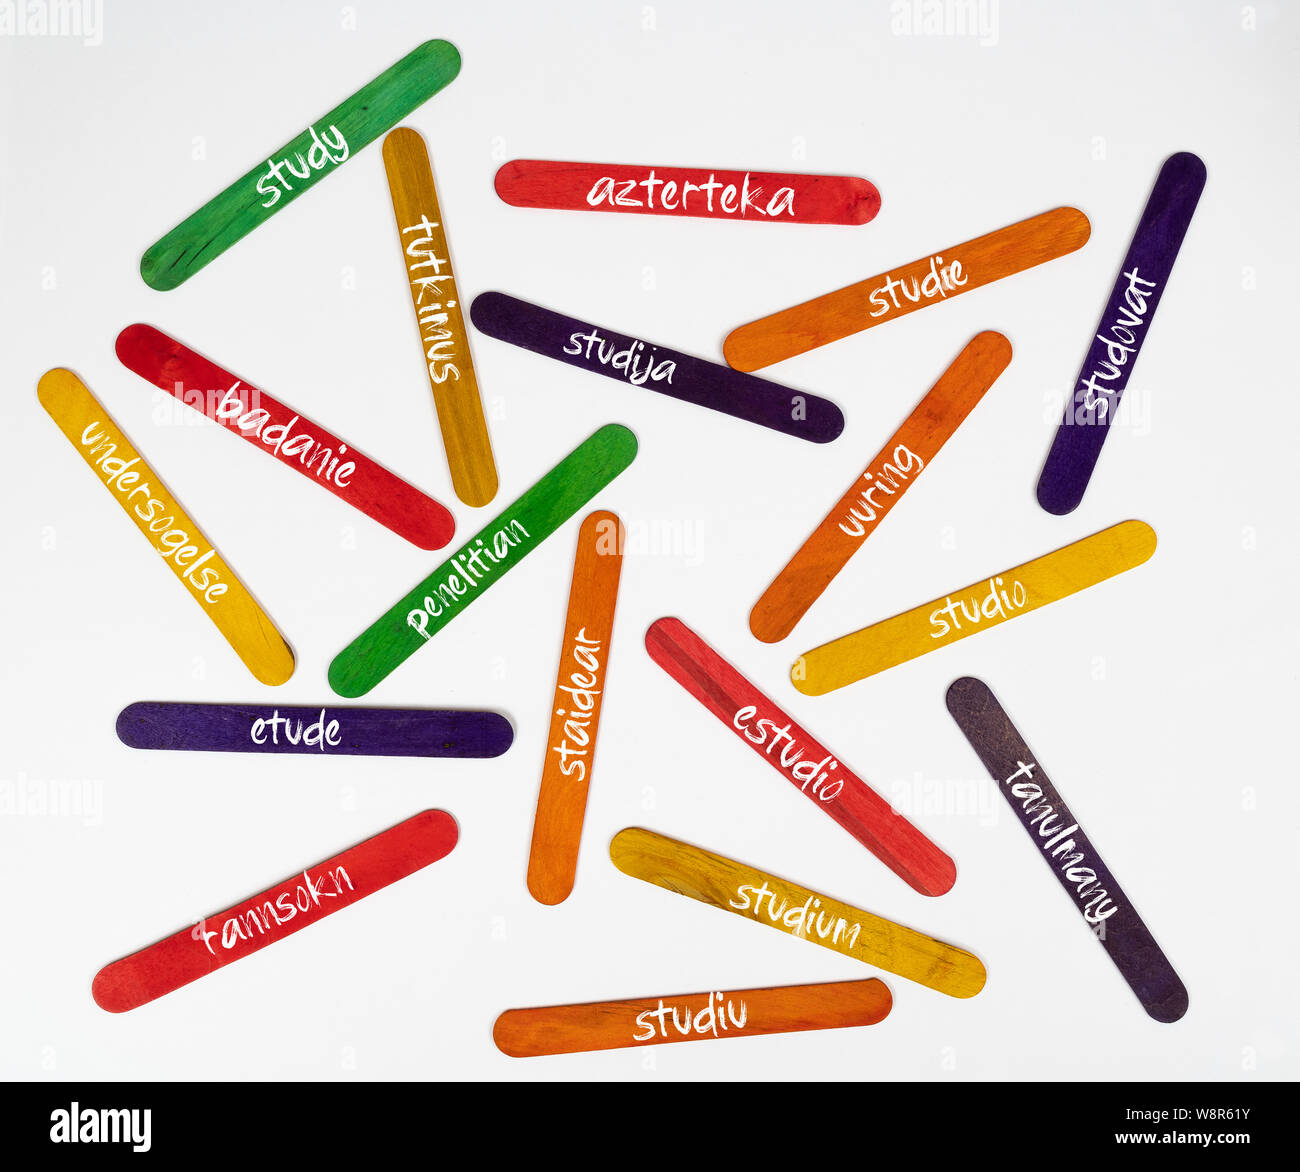 Das Konzept des Wortes Studie in verschiedenen Sprachen auf hölzernen farbigen Lamellen Stockfoto